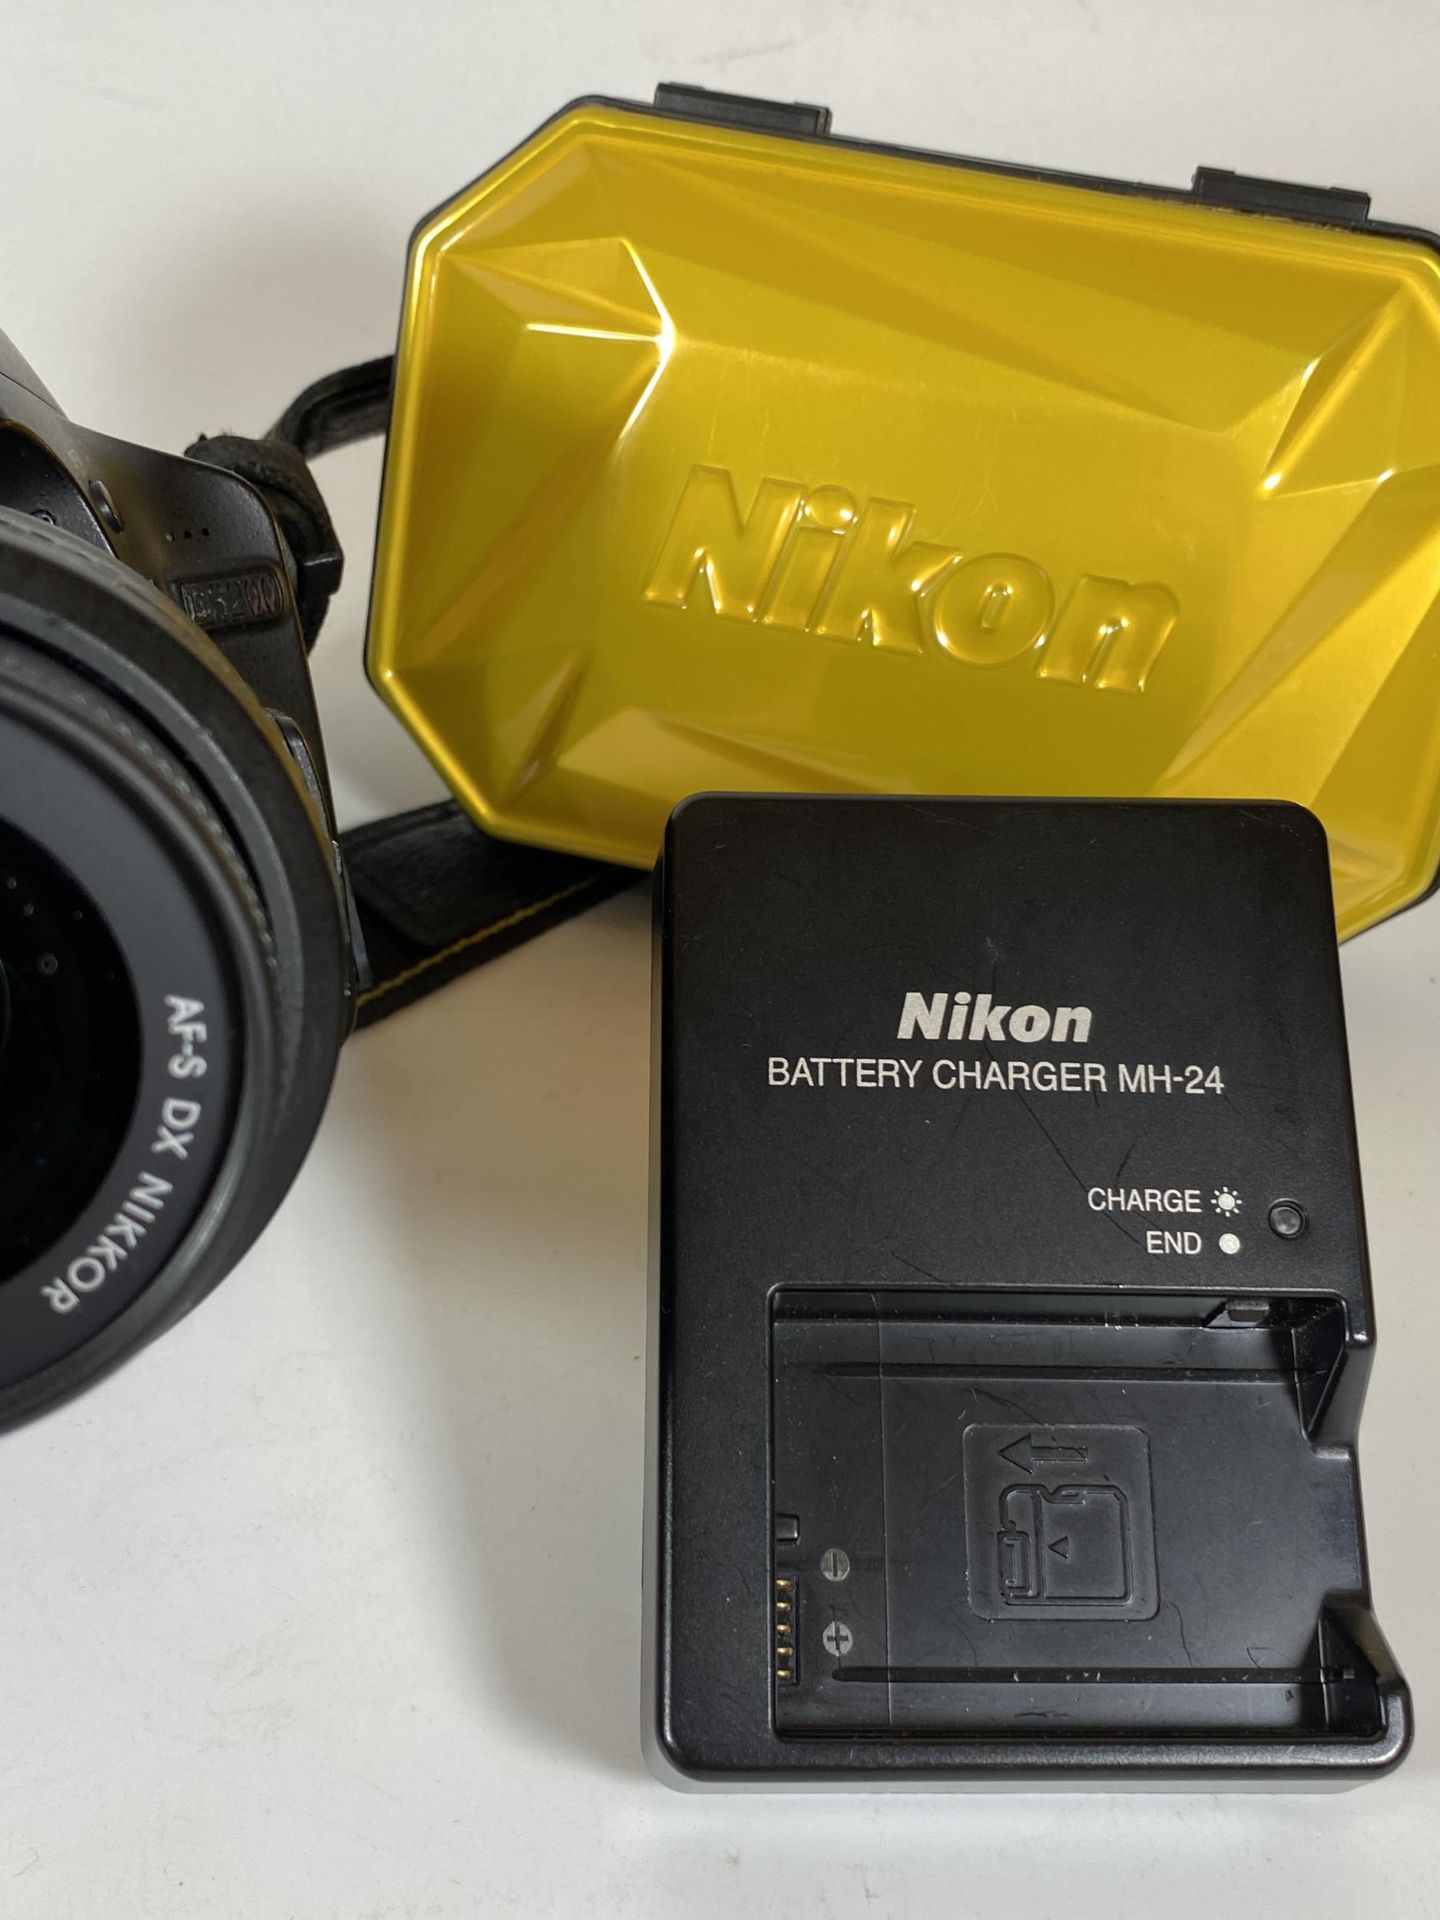 A NIKON D3200 DIGITAL SLR CAMERA WITH AF-S DX NIKKOR 18-55MM 1:3.5-5.6 G VR LENS, CHARGER, - Image 3 of 5